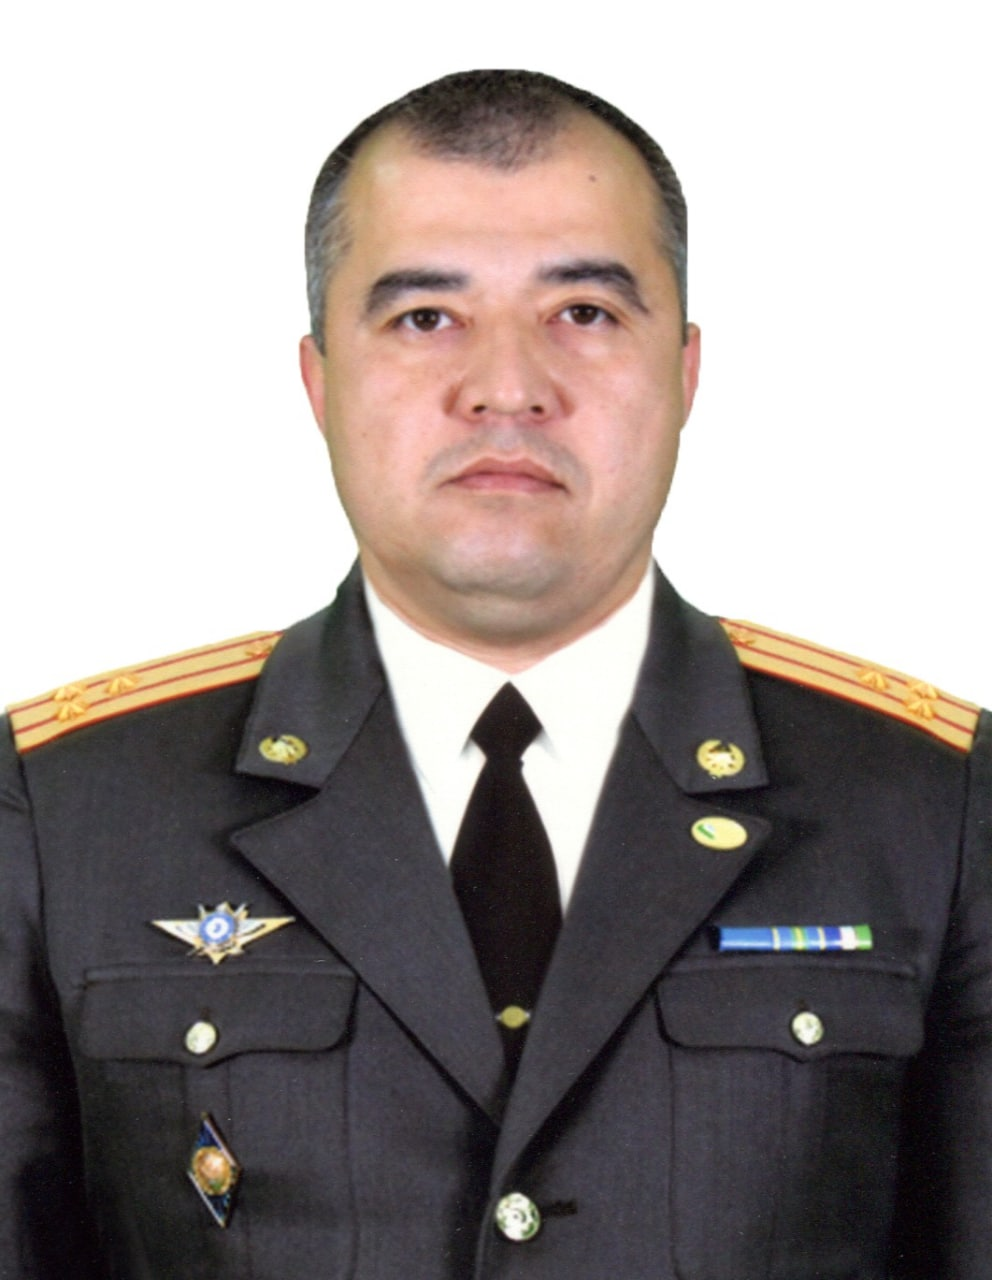 Batirov